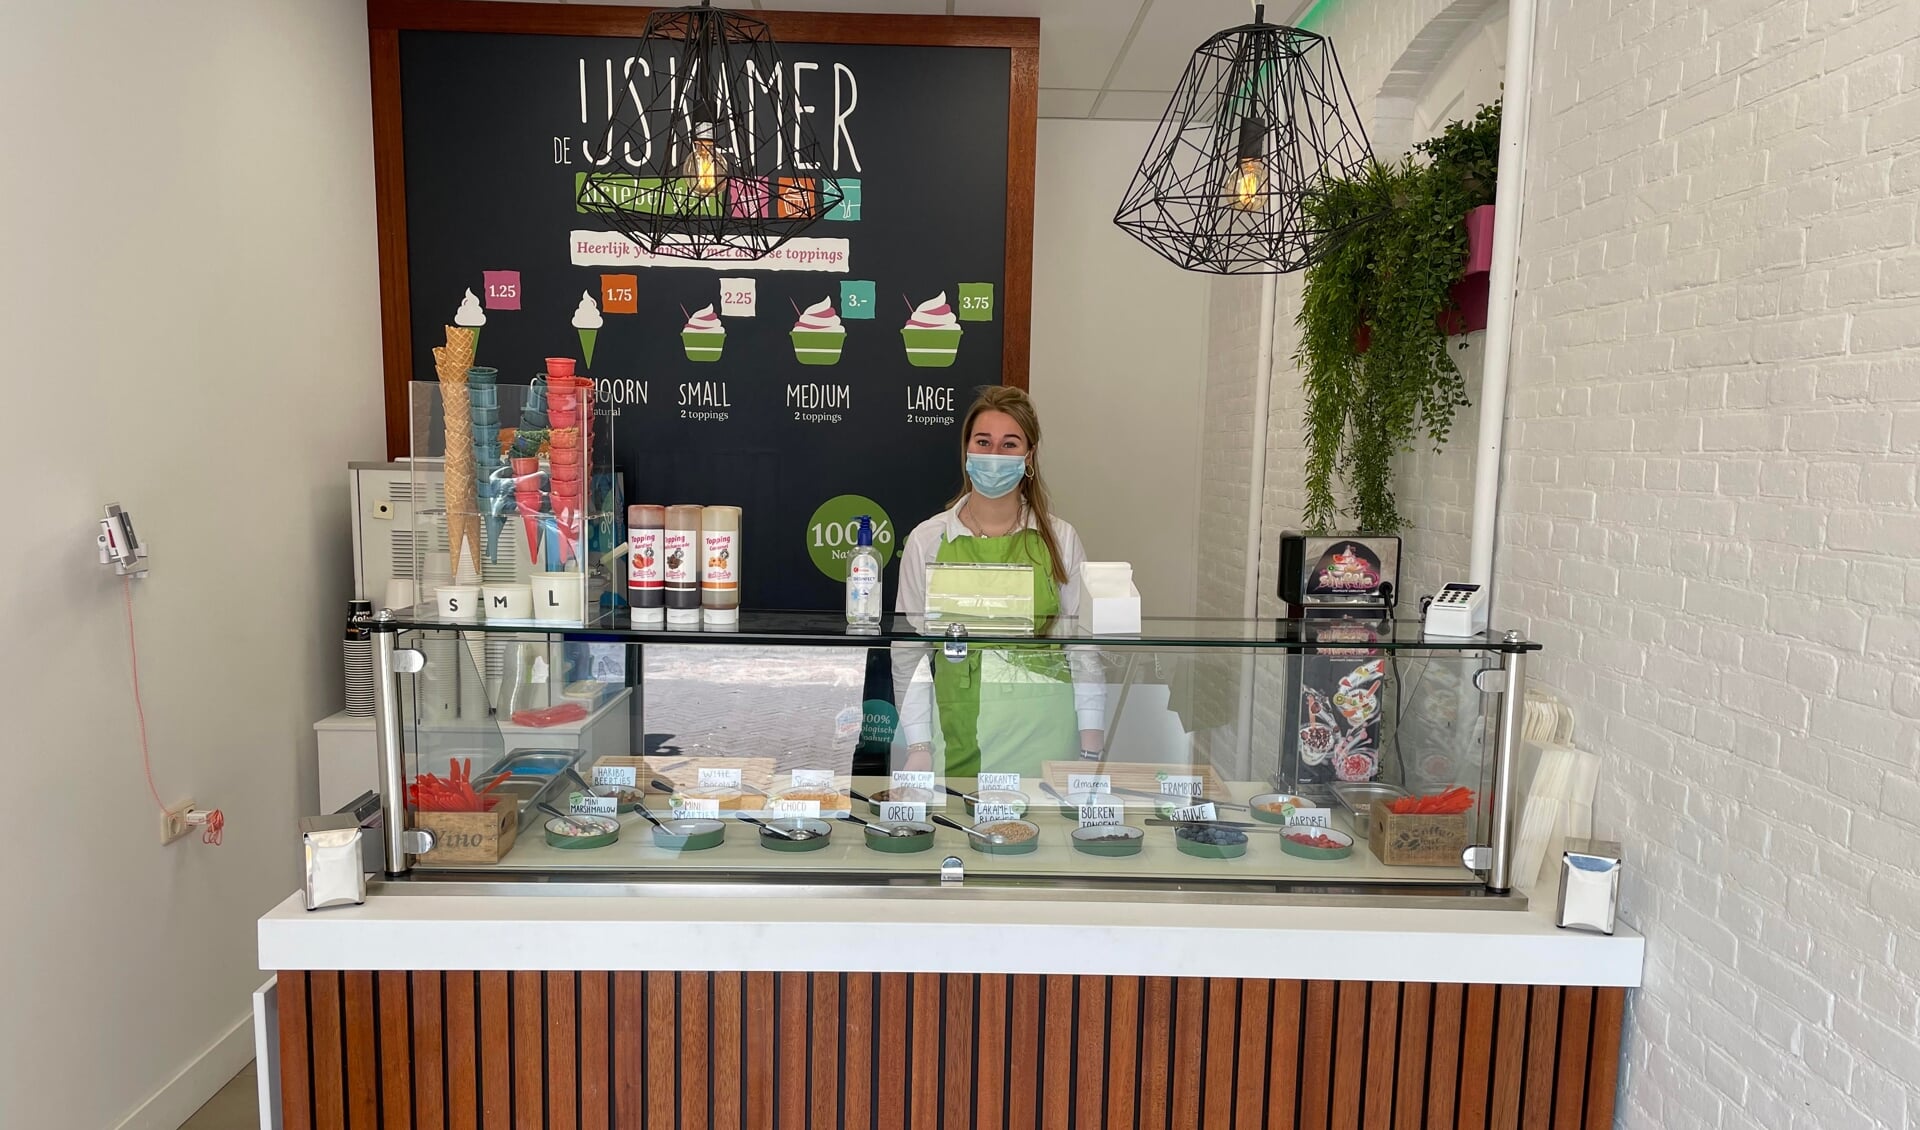 De IJskamer is het adres op De Traaij voor ijs op yoghurtbasis met heerlijke toppings.